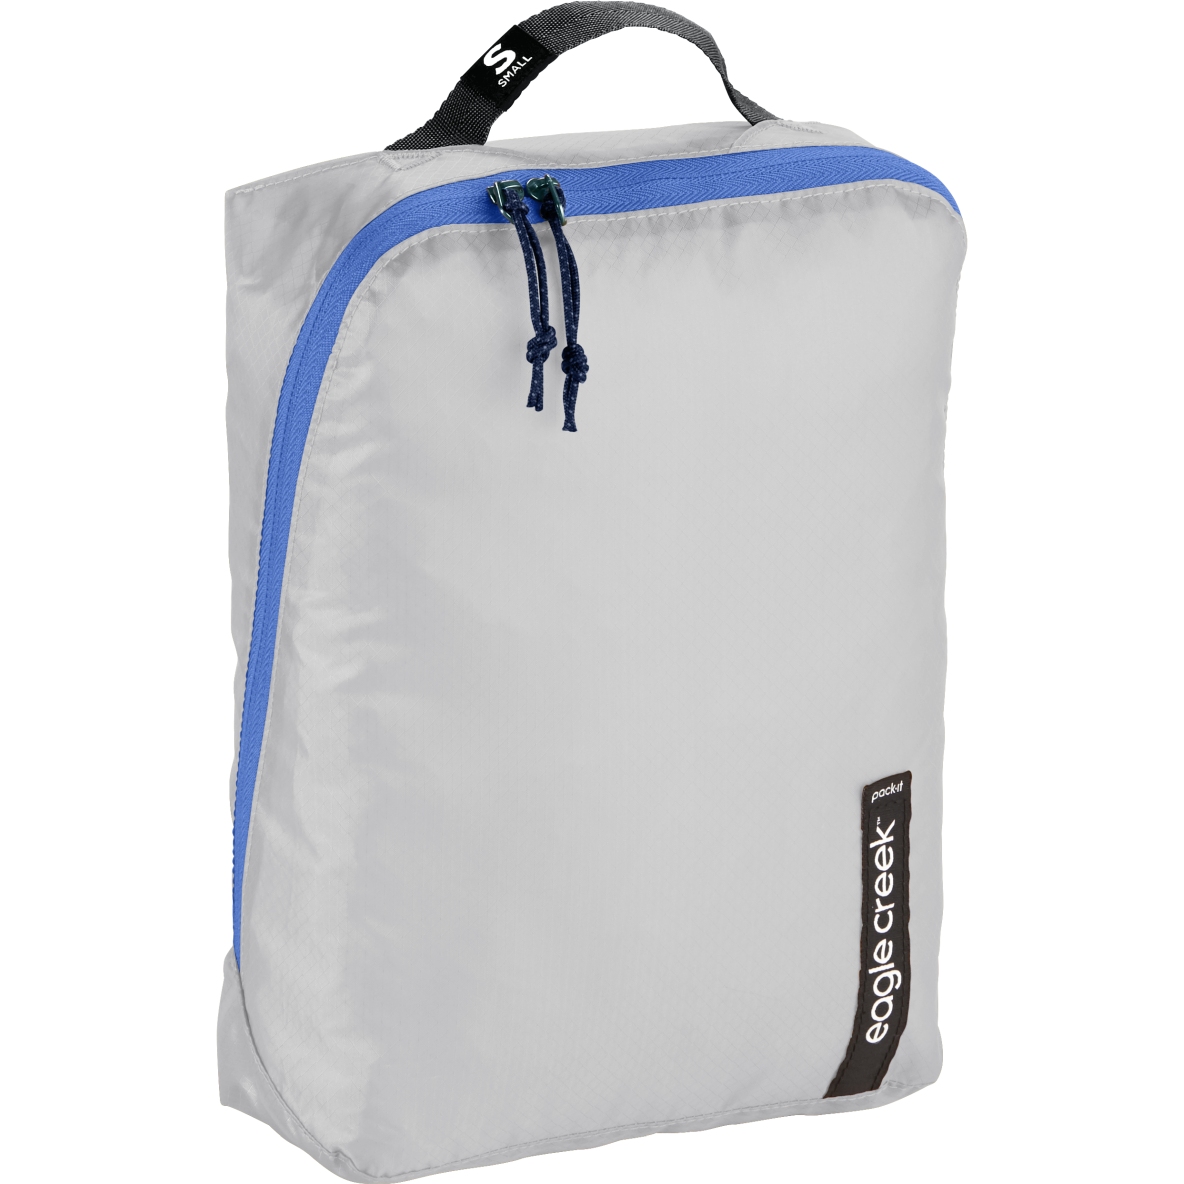 Produktbild von Eagle Creek Pack-It™ Isolate Cube S - Packtasche - az blue/grey